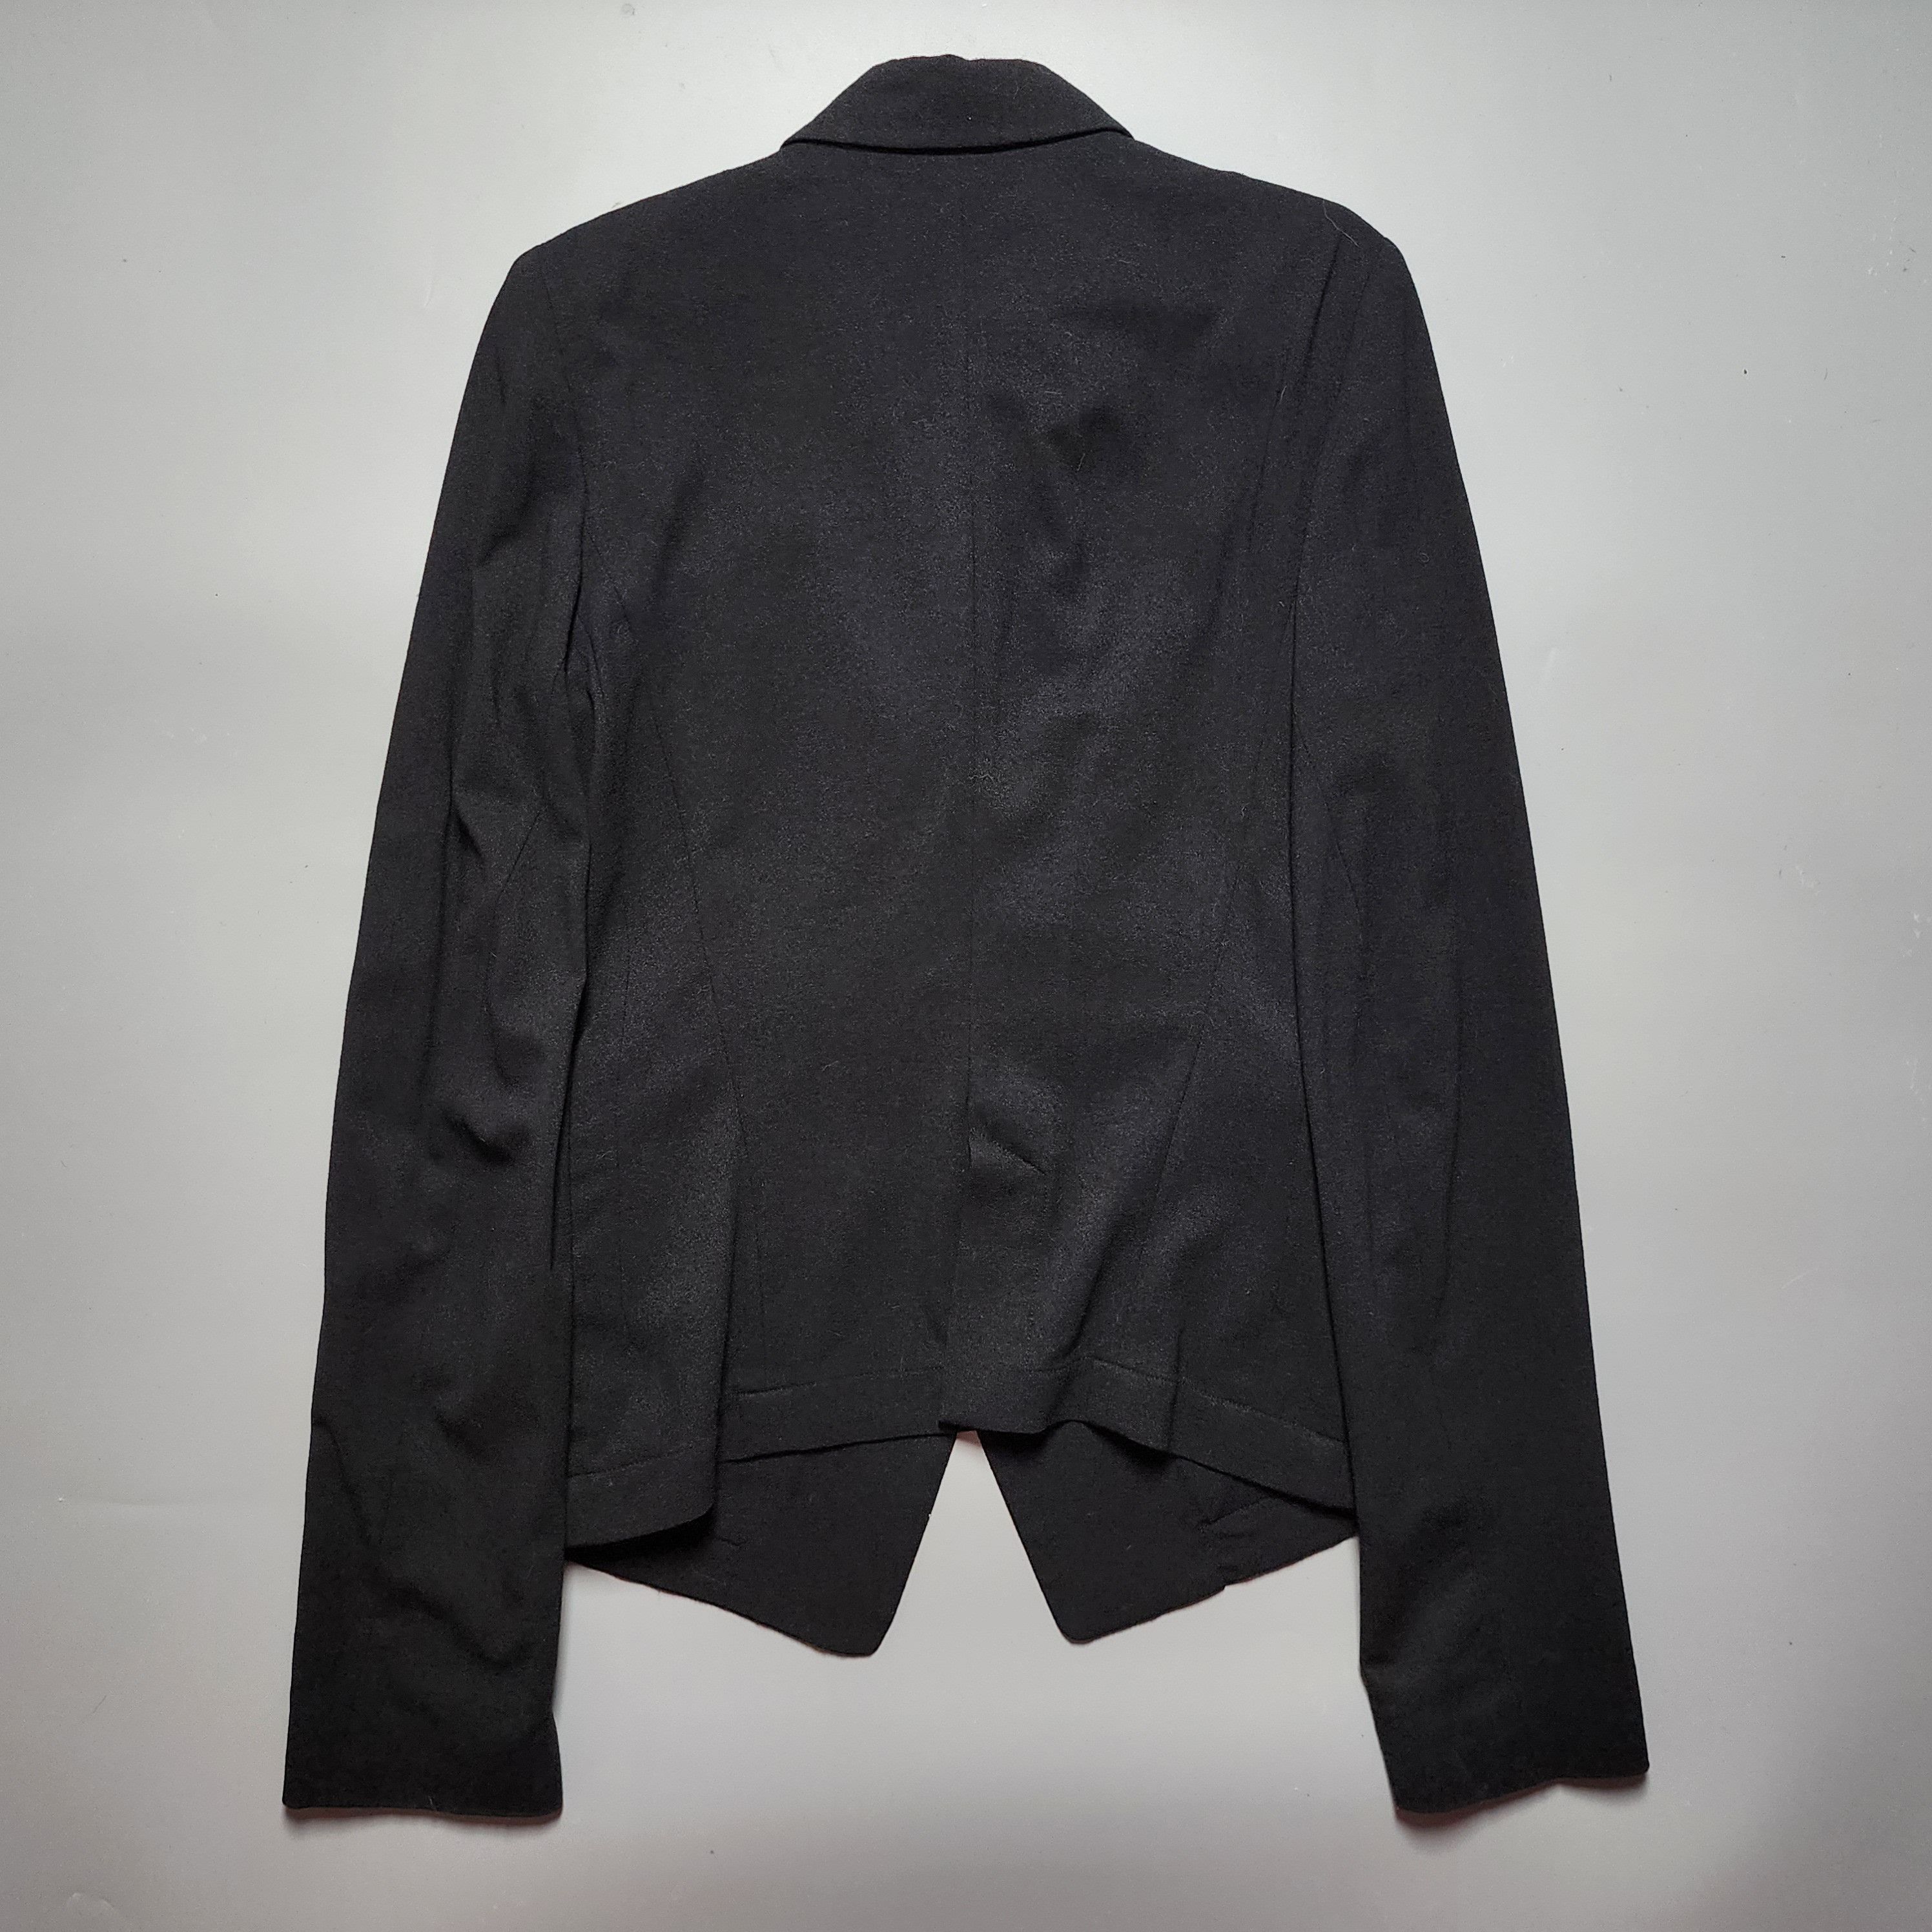 Ann Demeulemeester - Archive Fleece Wool Blazer Jacket - 2